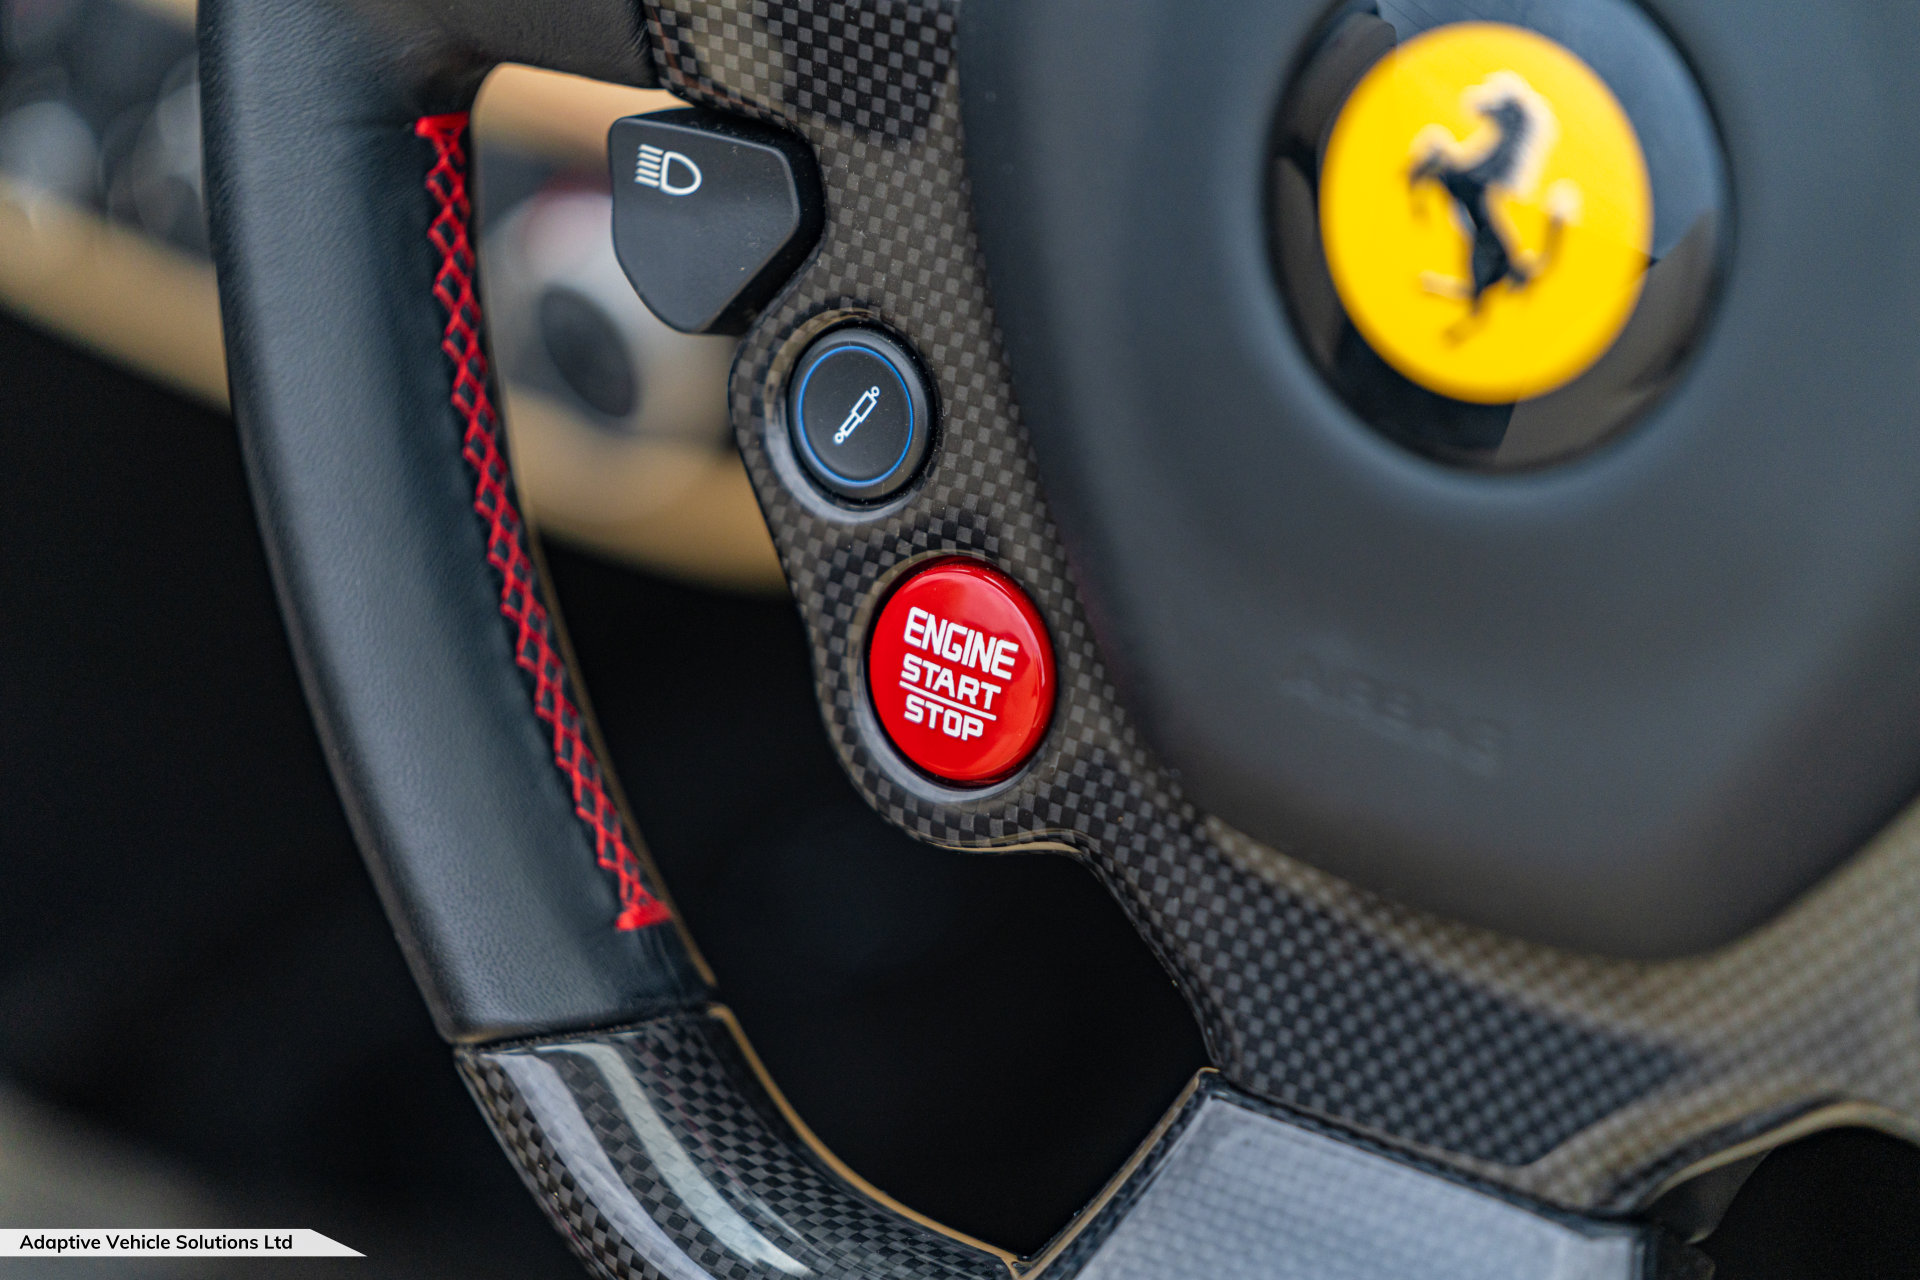 2019 Ferrari 488 Spider GTS Rosso Crema start button